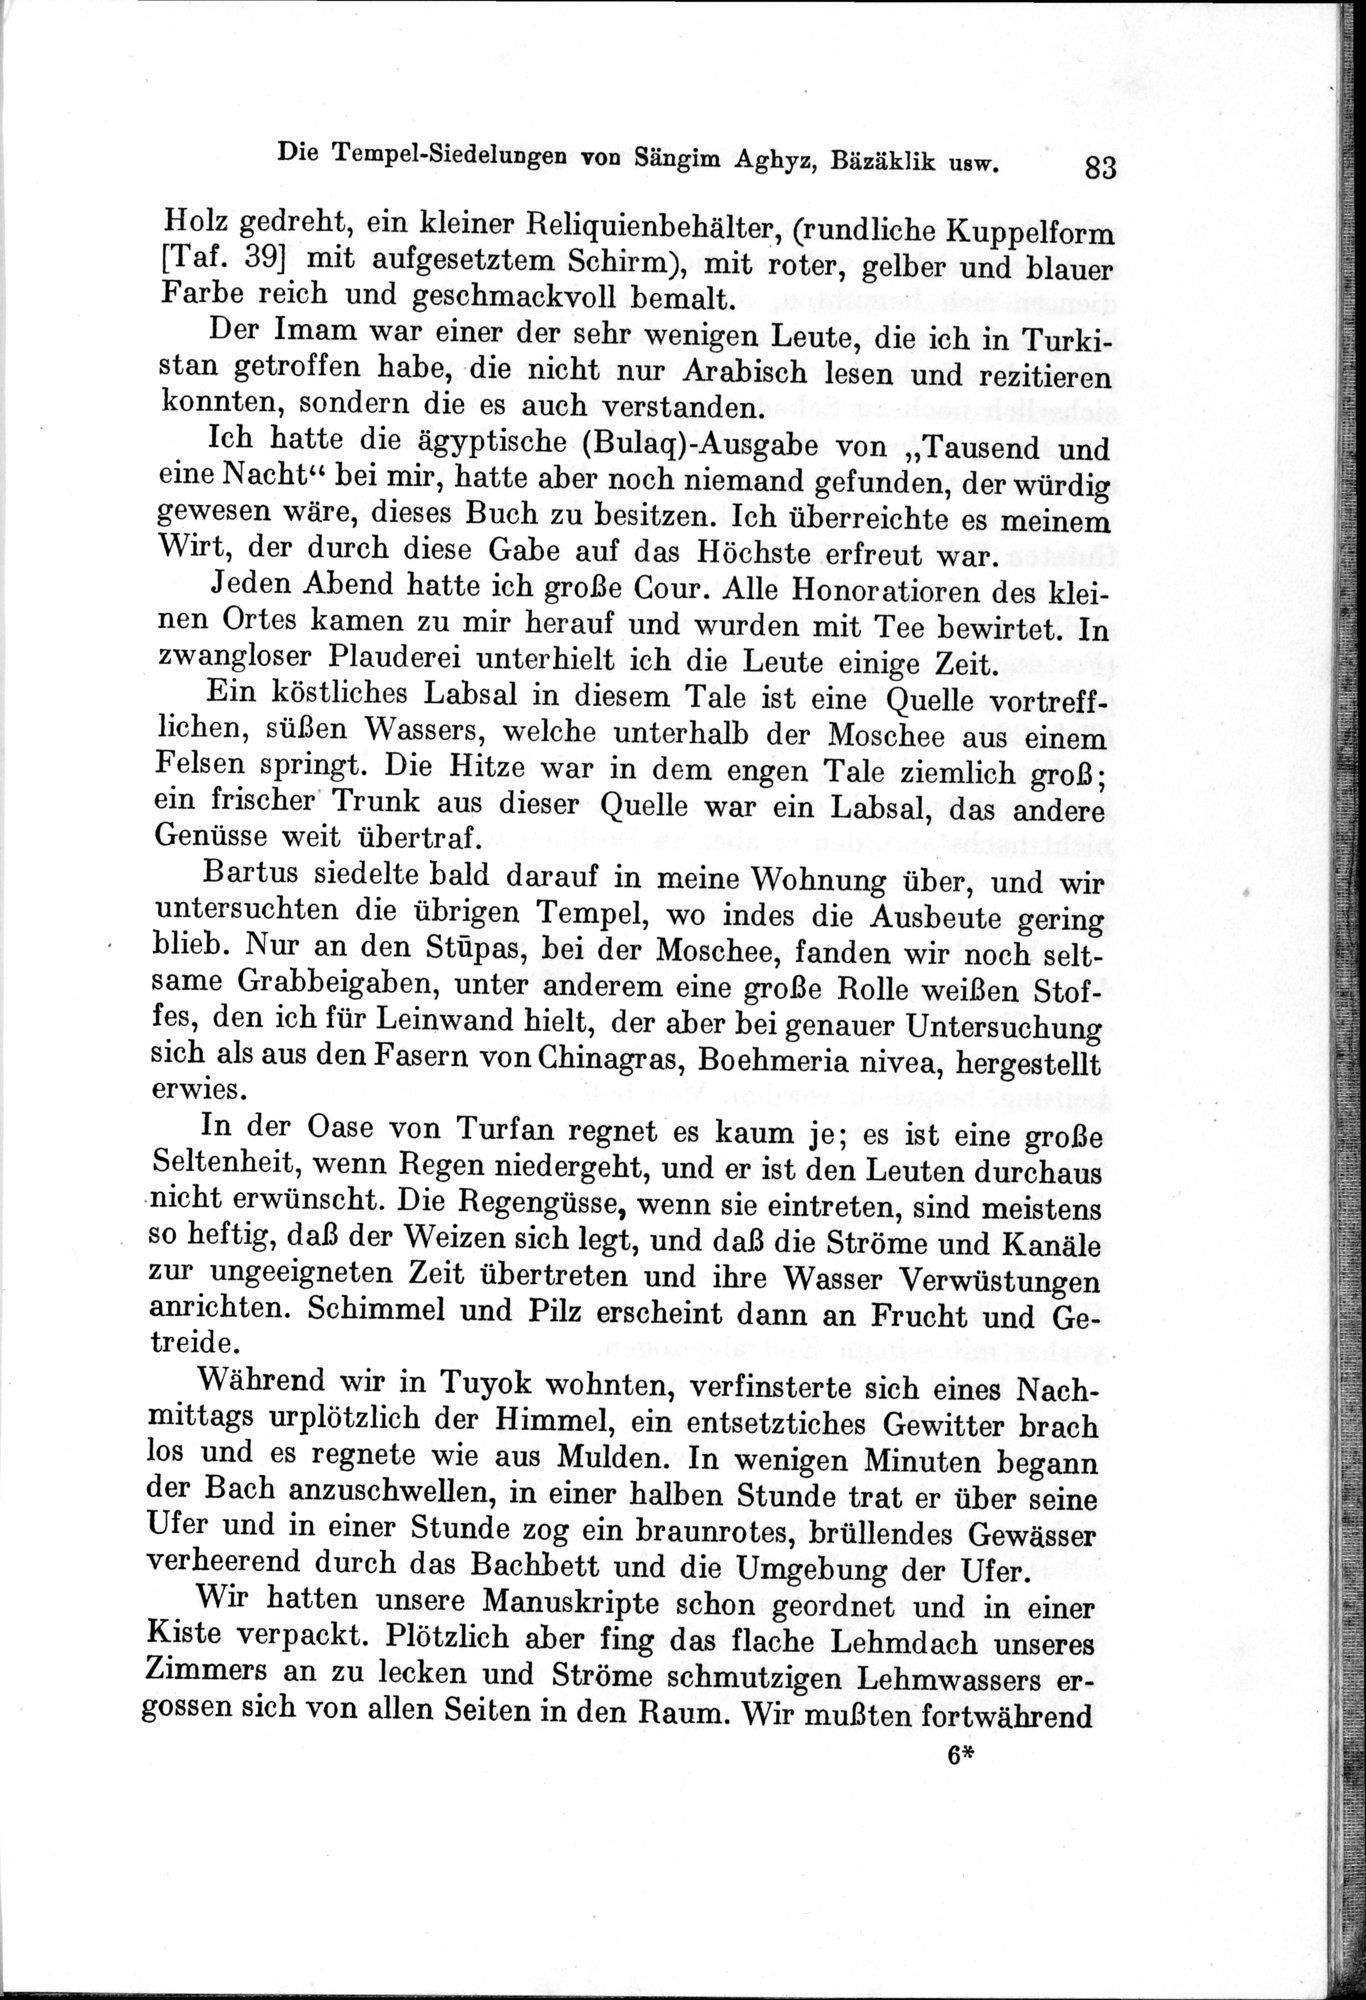 Auf Hellas Spuren in Ostturkistan : vol.1 / Page 123 (Grayscale High Resolution Image)